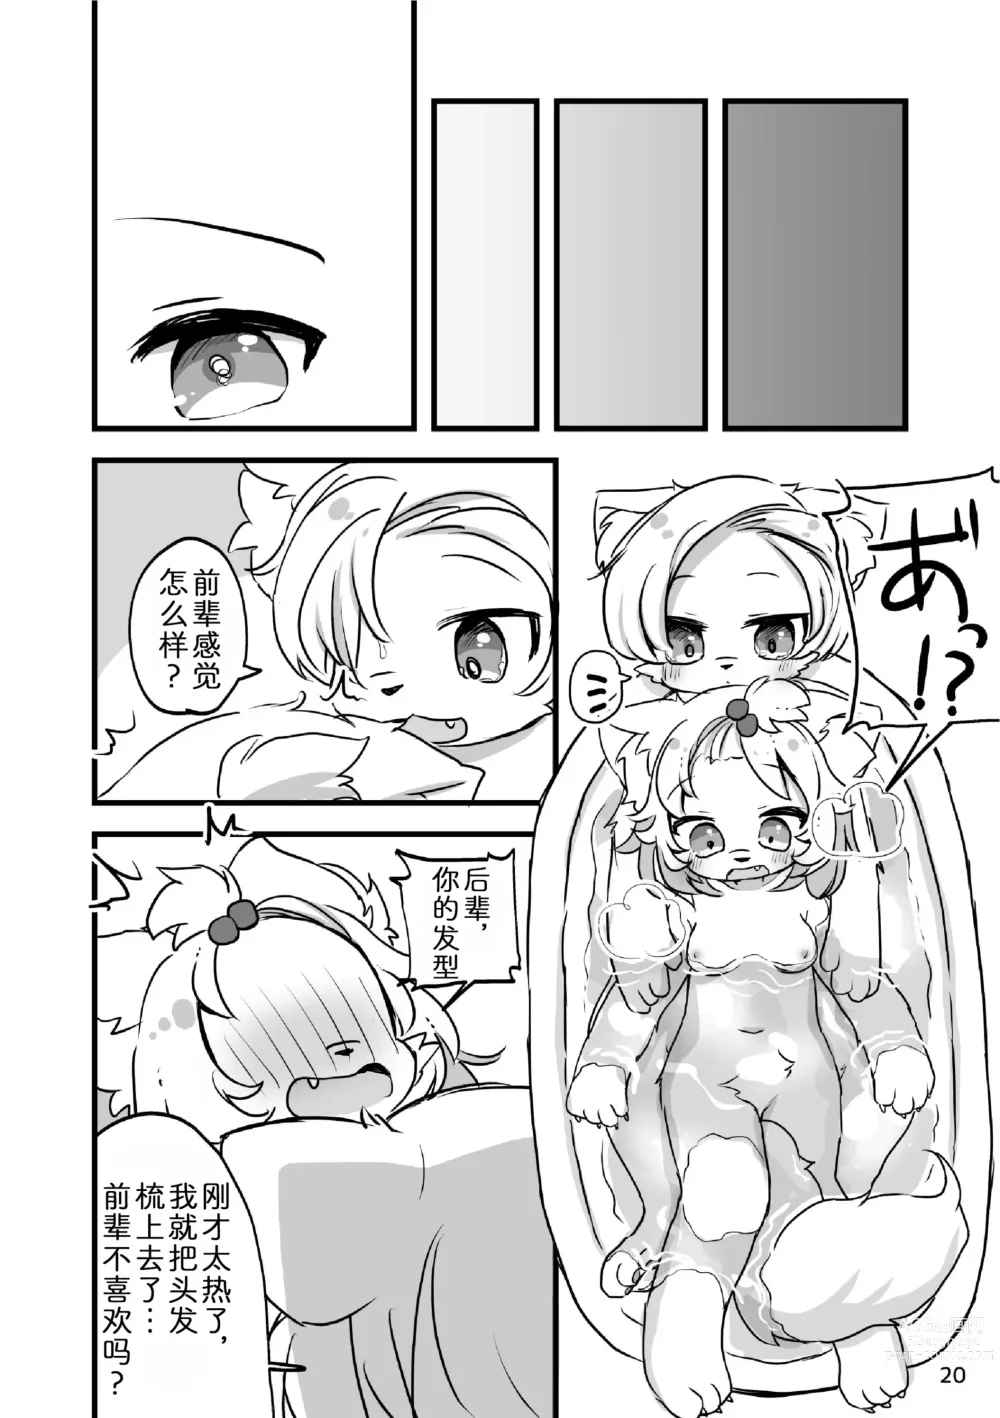 Page 22 of doujinshi 蓬蓬发情中